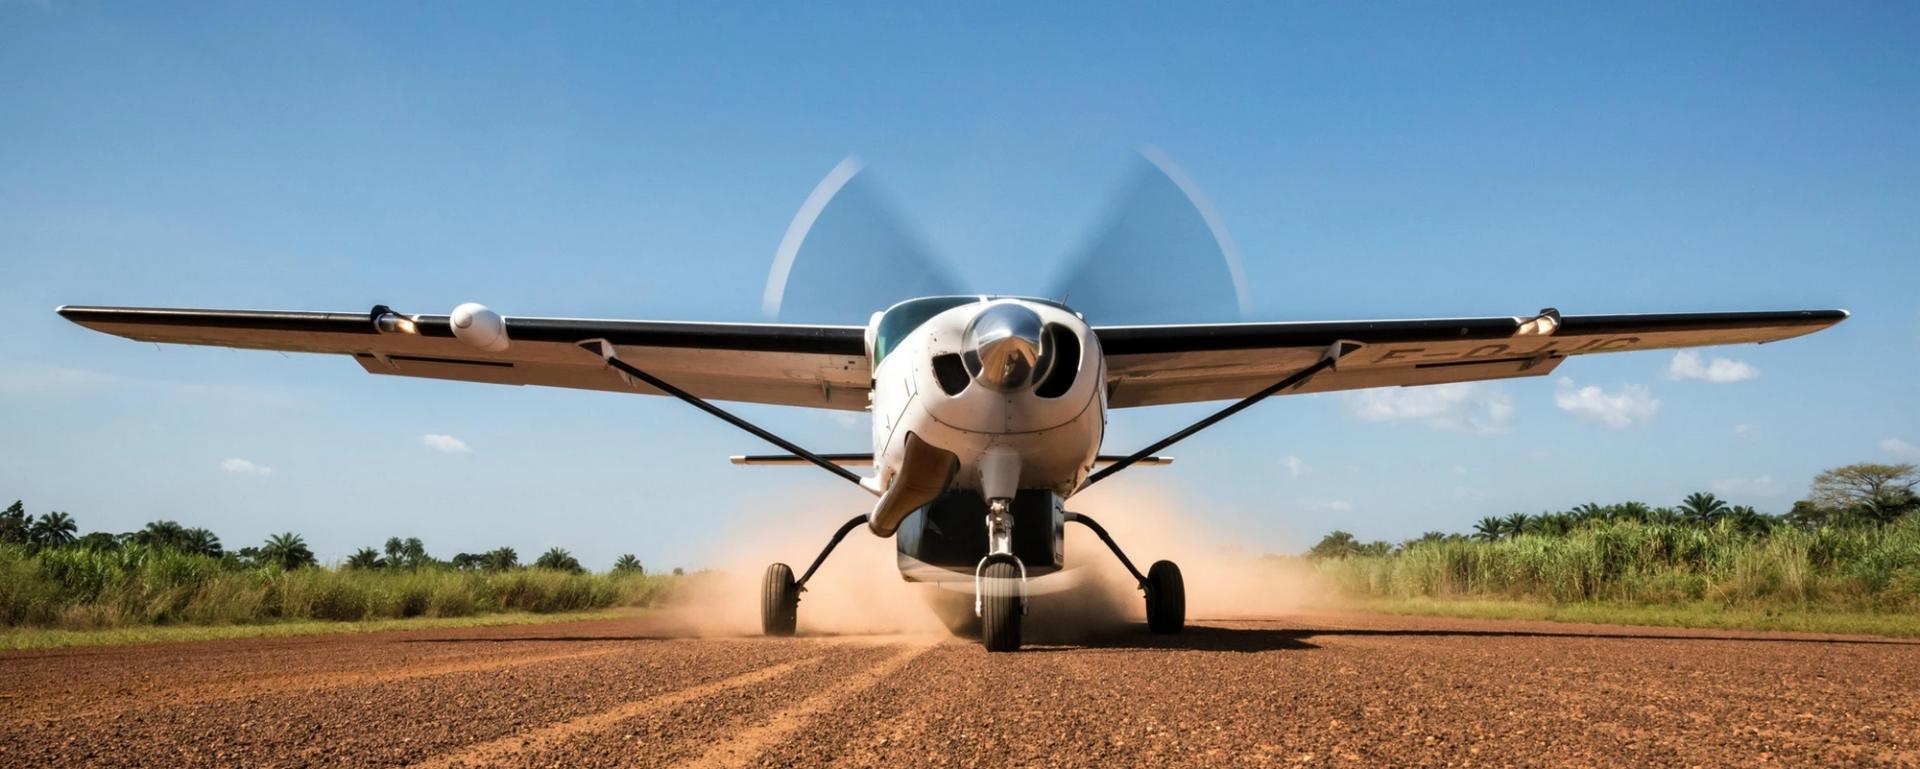 Cessna208 grand caravan Aviation Sans frontières au sol